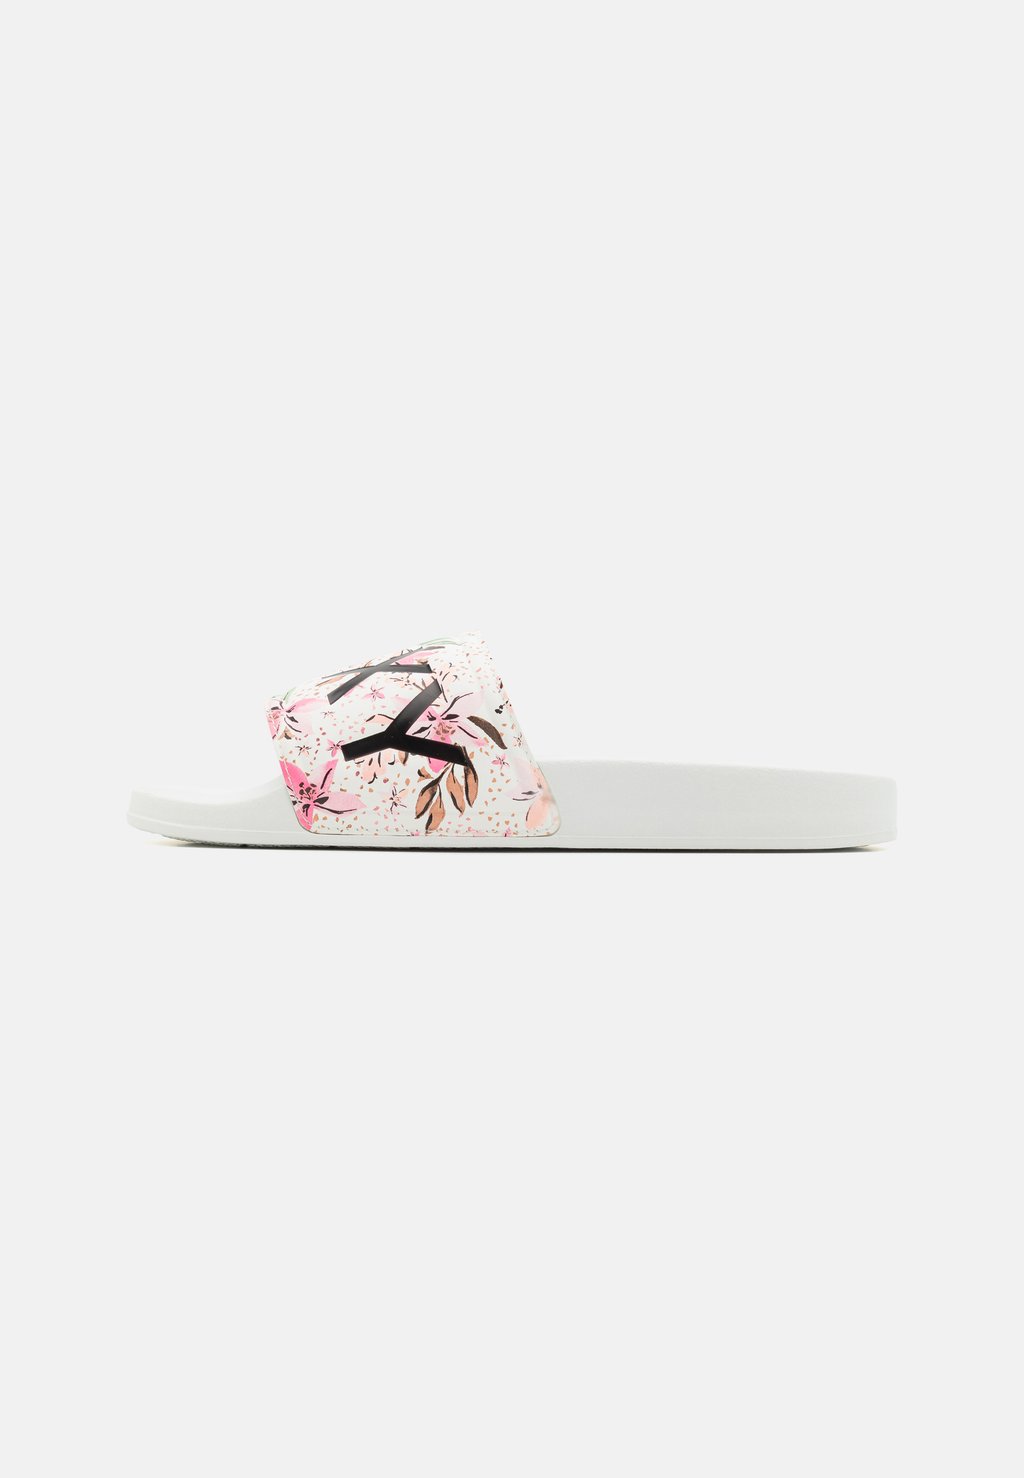 Тапочки Slippy Roxy, цвет white/pink